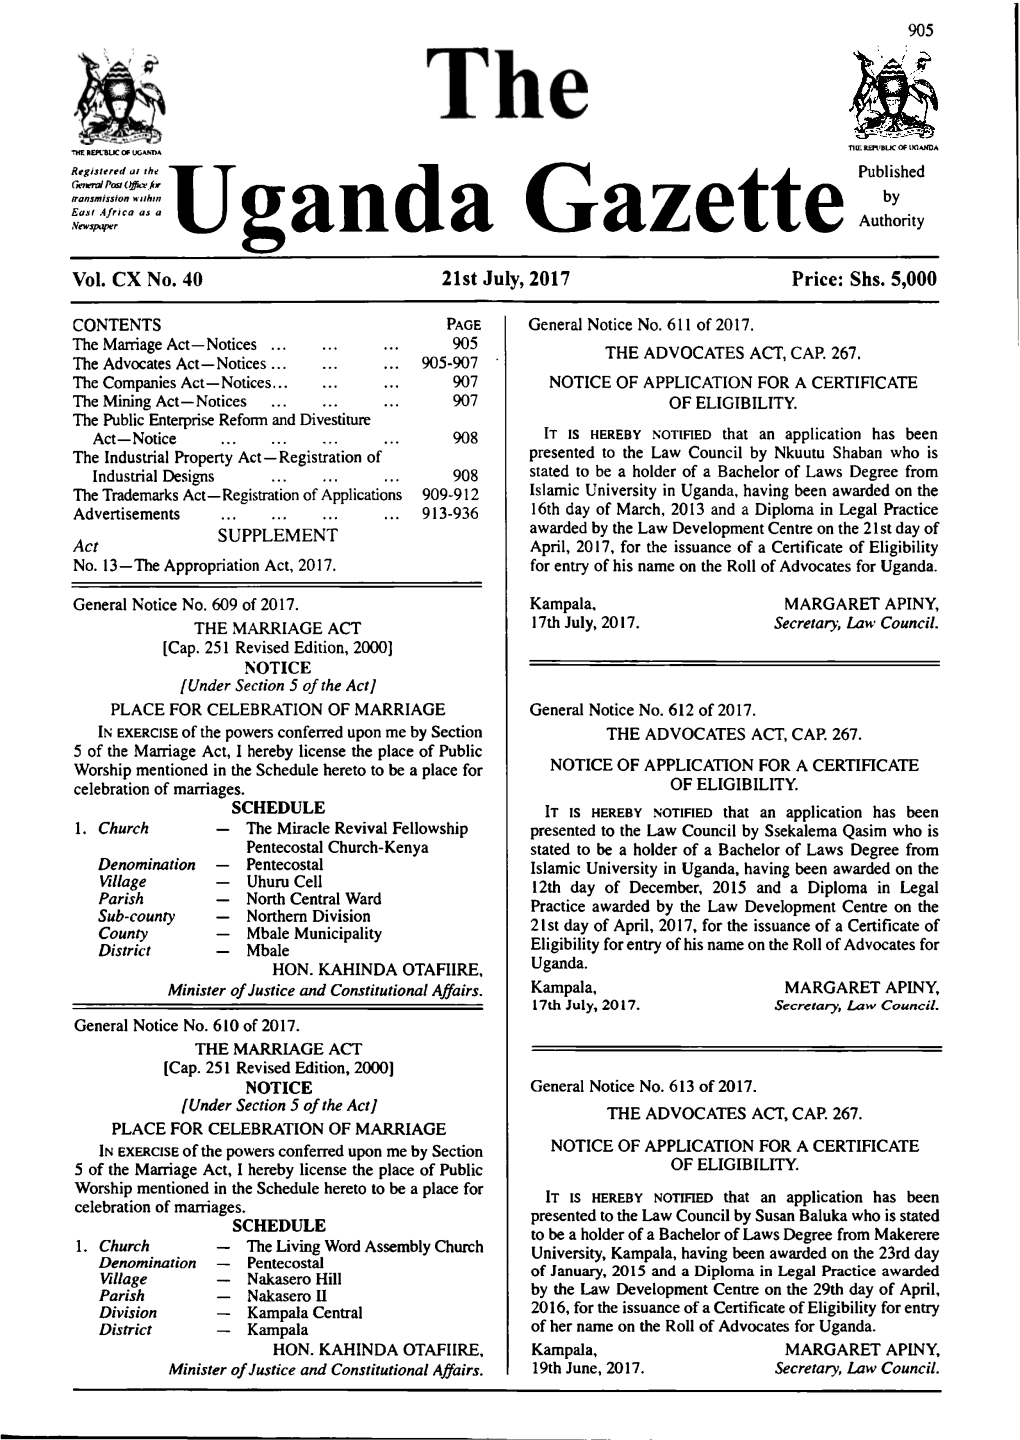 Uganda Gazettepublished